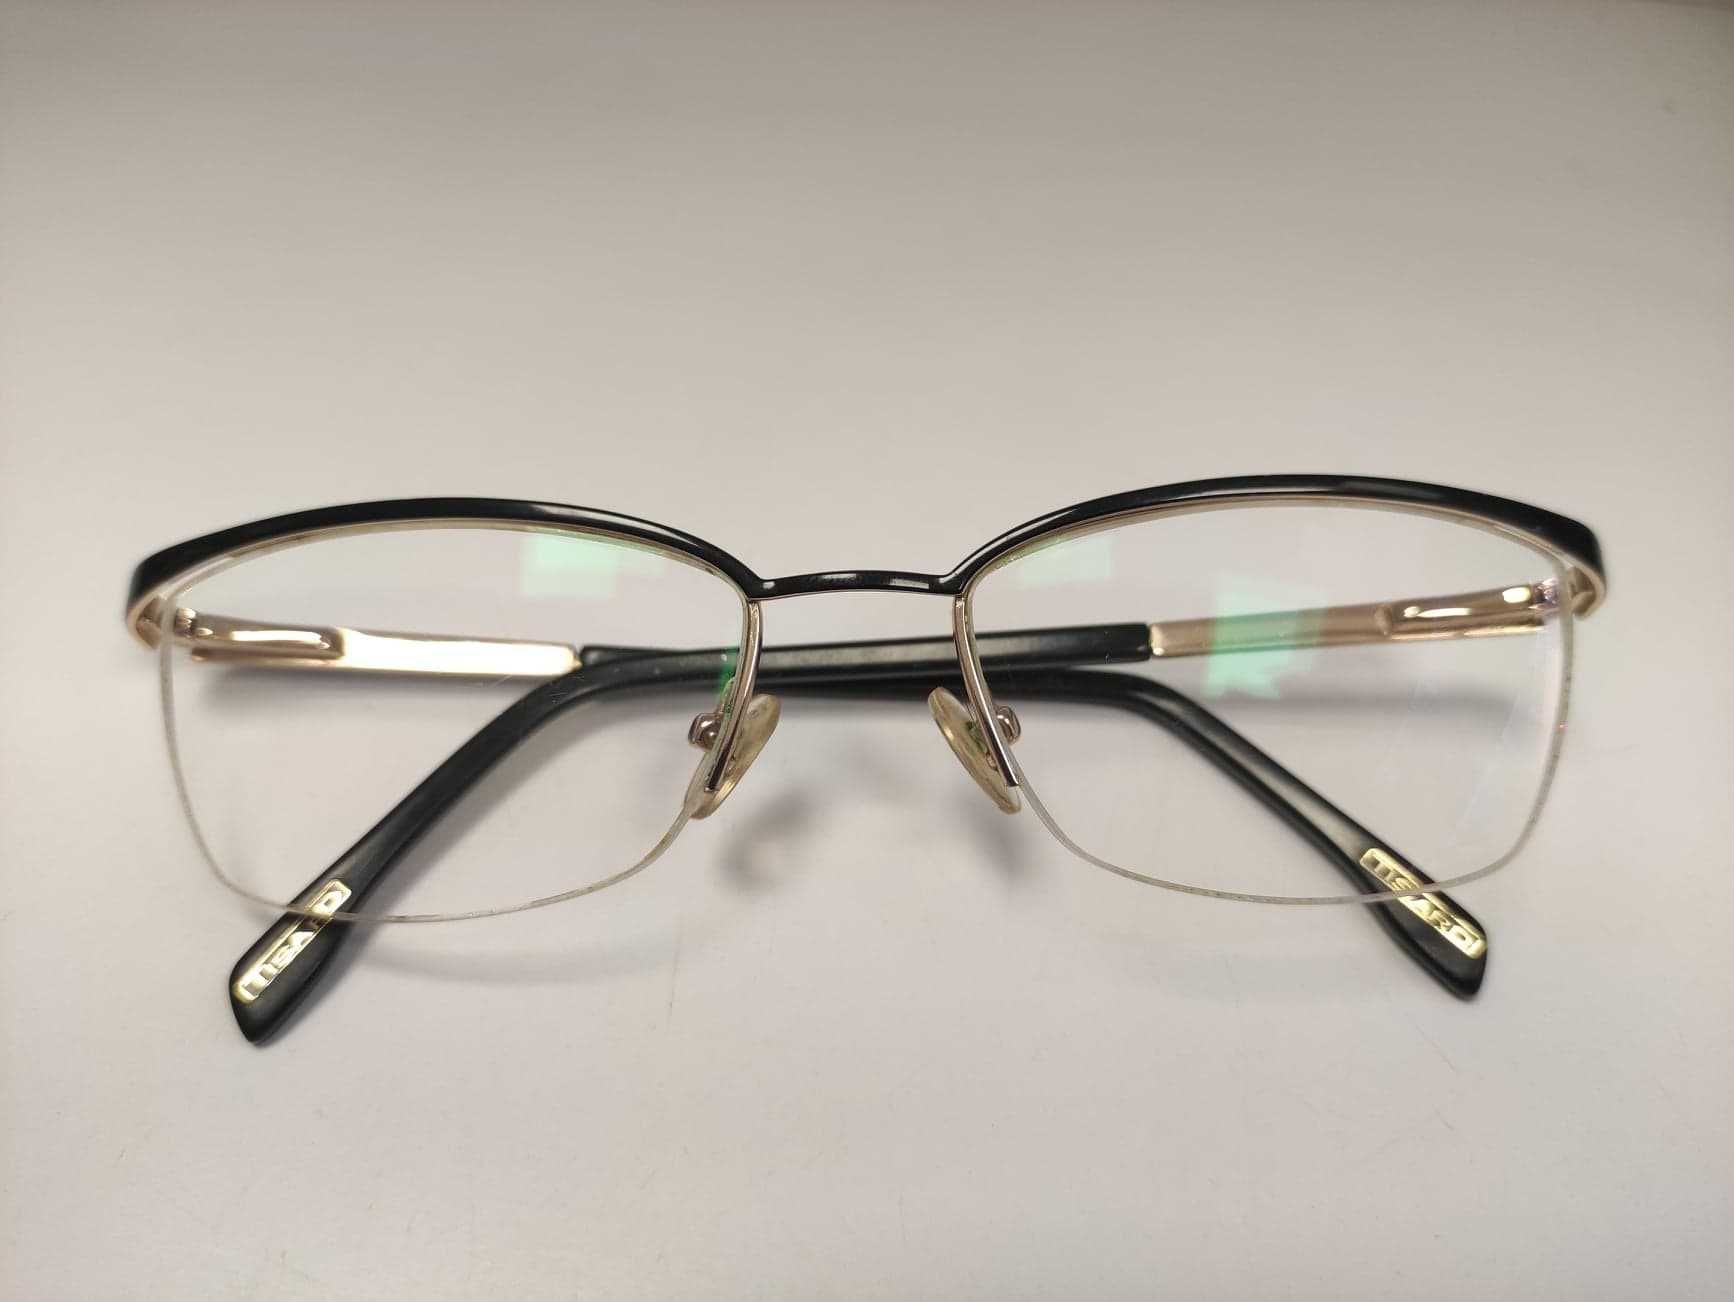 Okulary korekcyjne damskie -1,75 antyrefleks Tissard